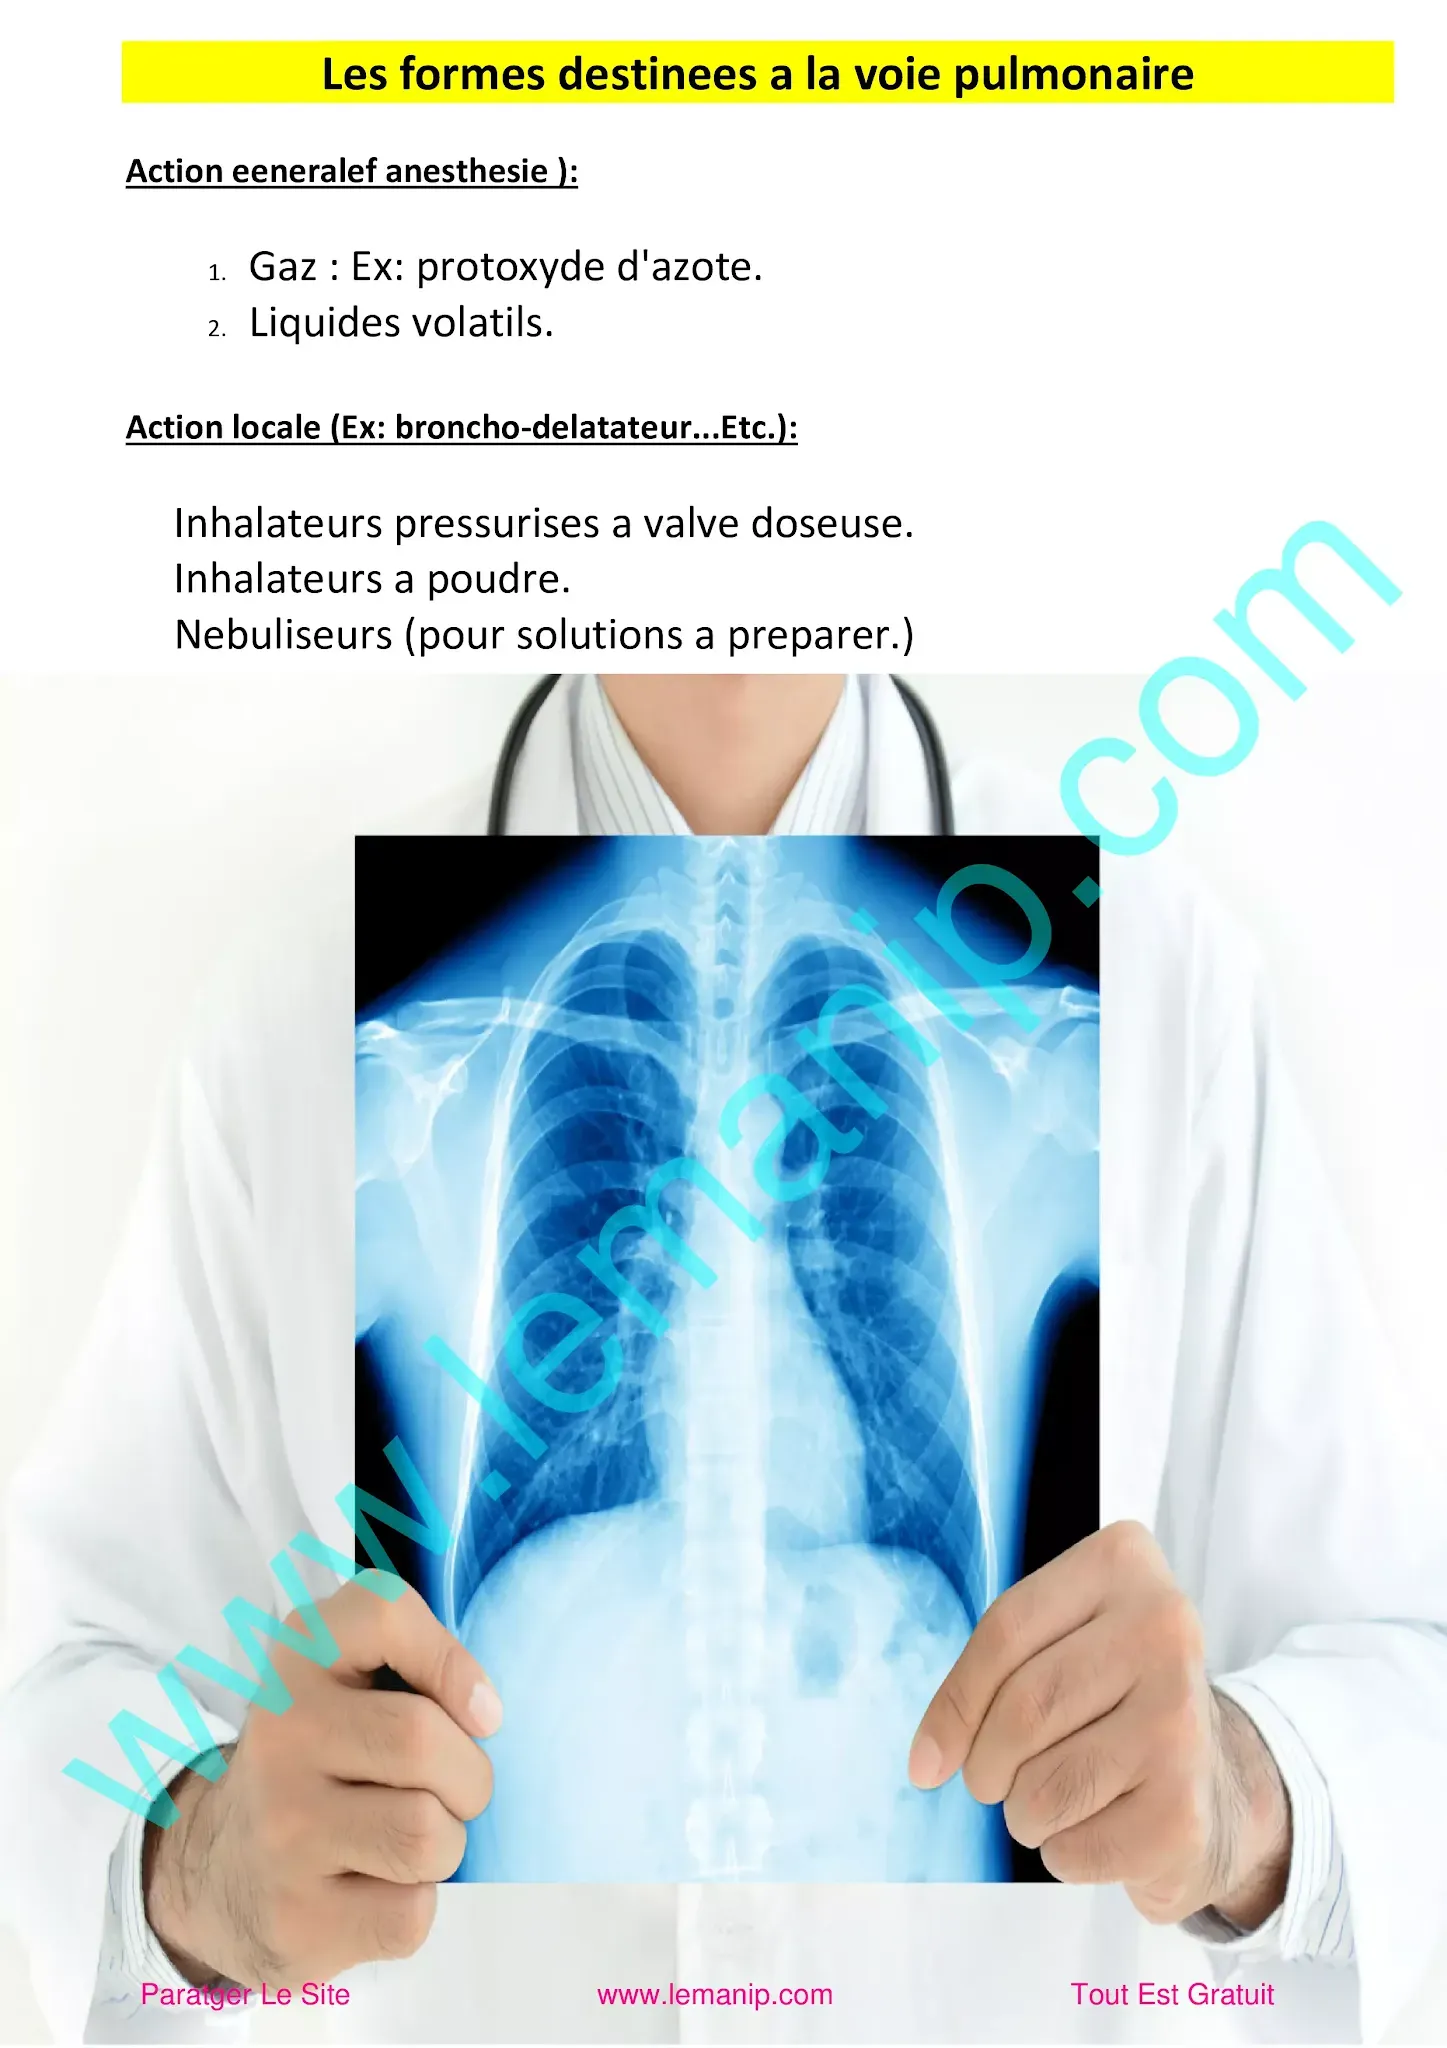 Les formes destinees a la voie pulmonaire